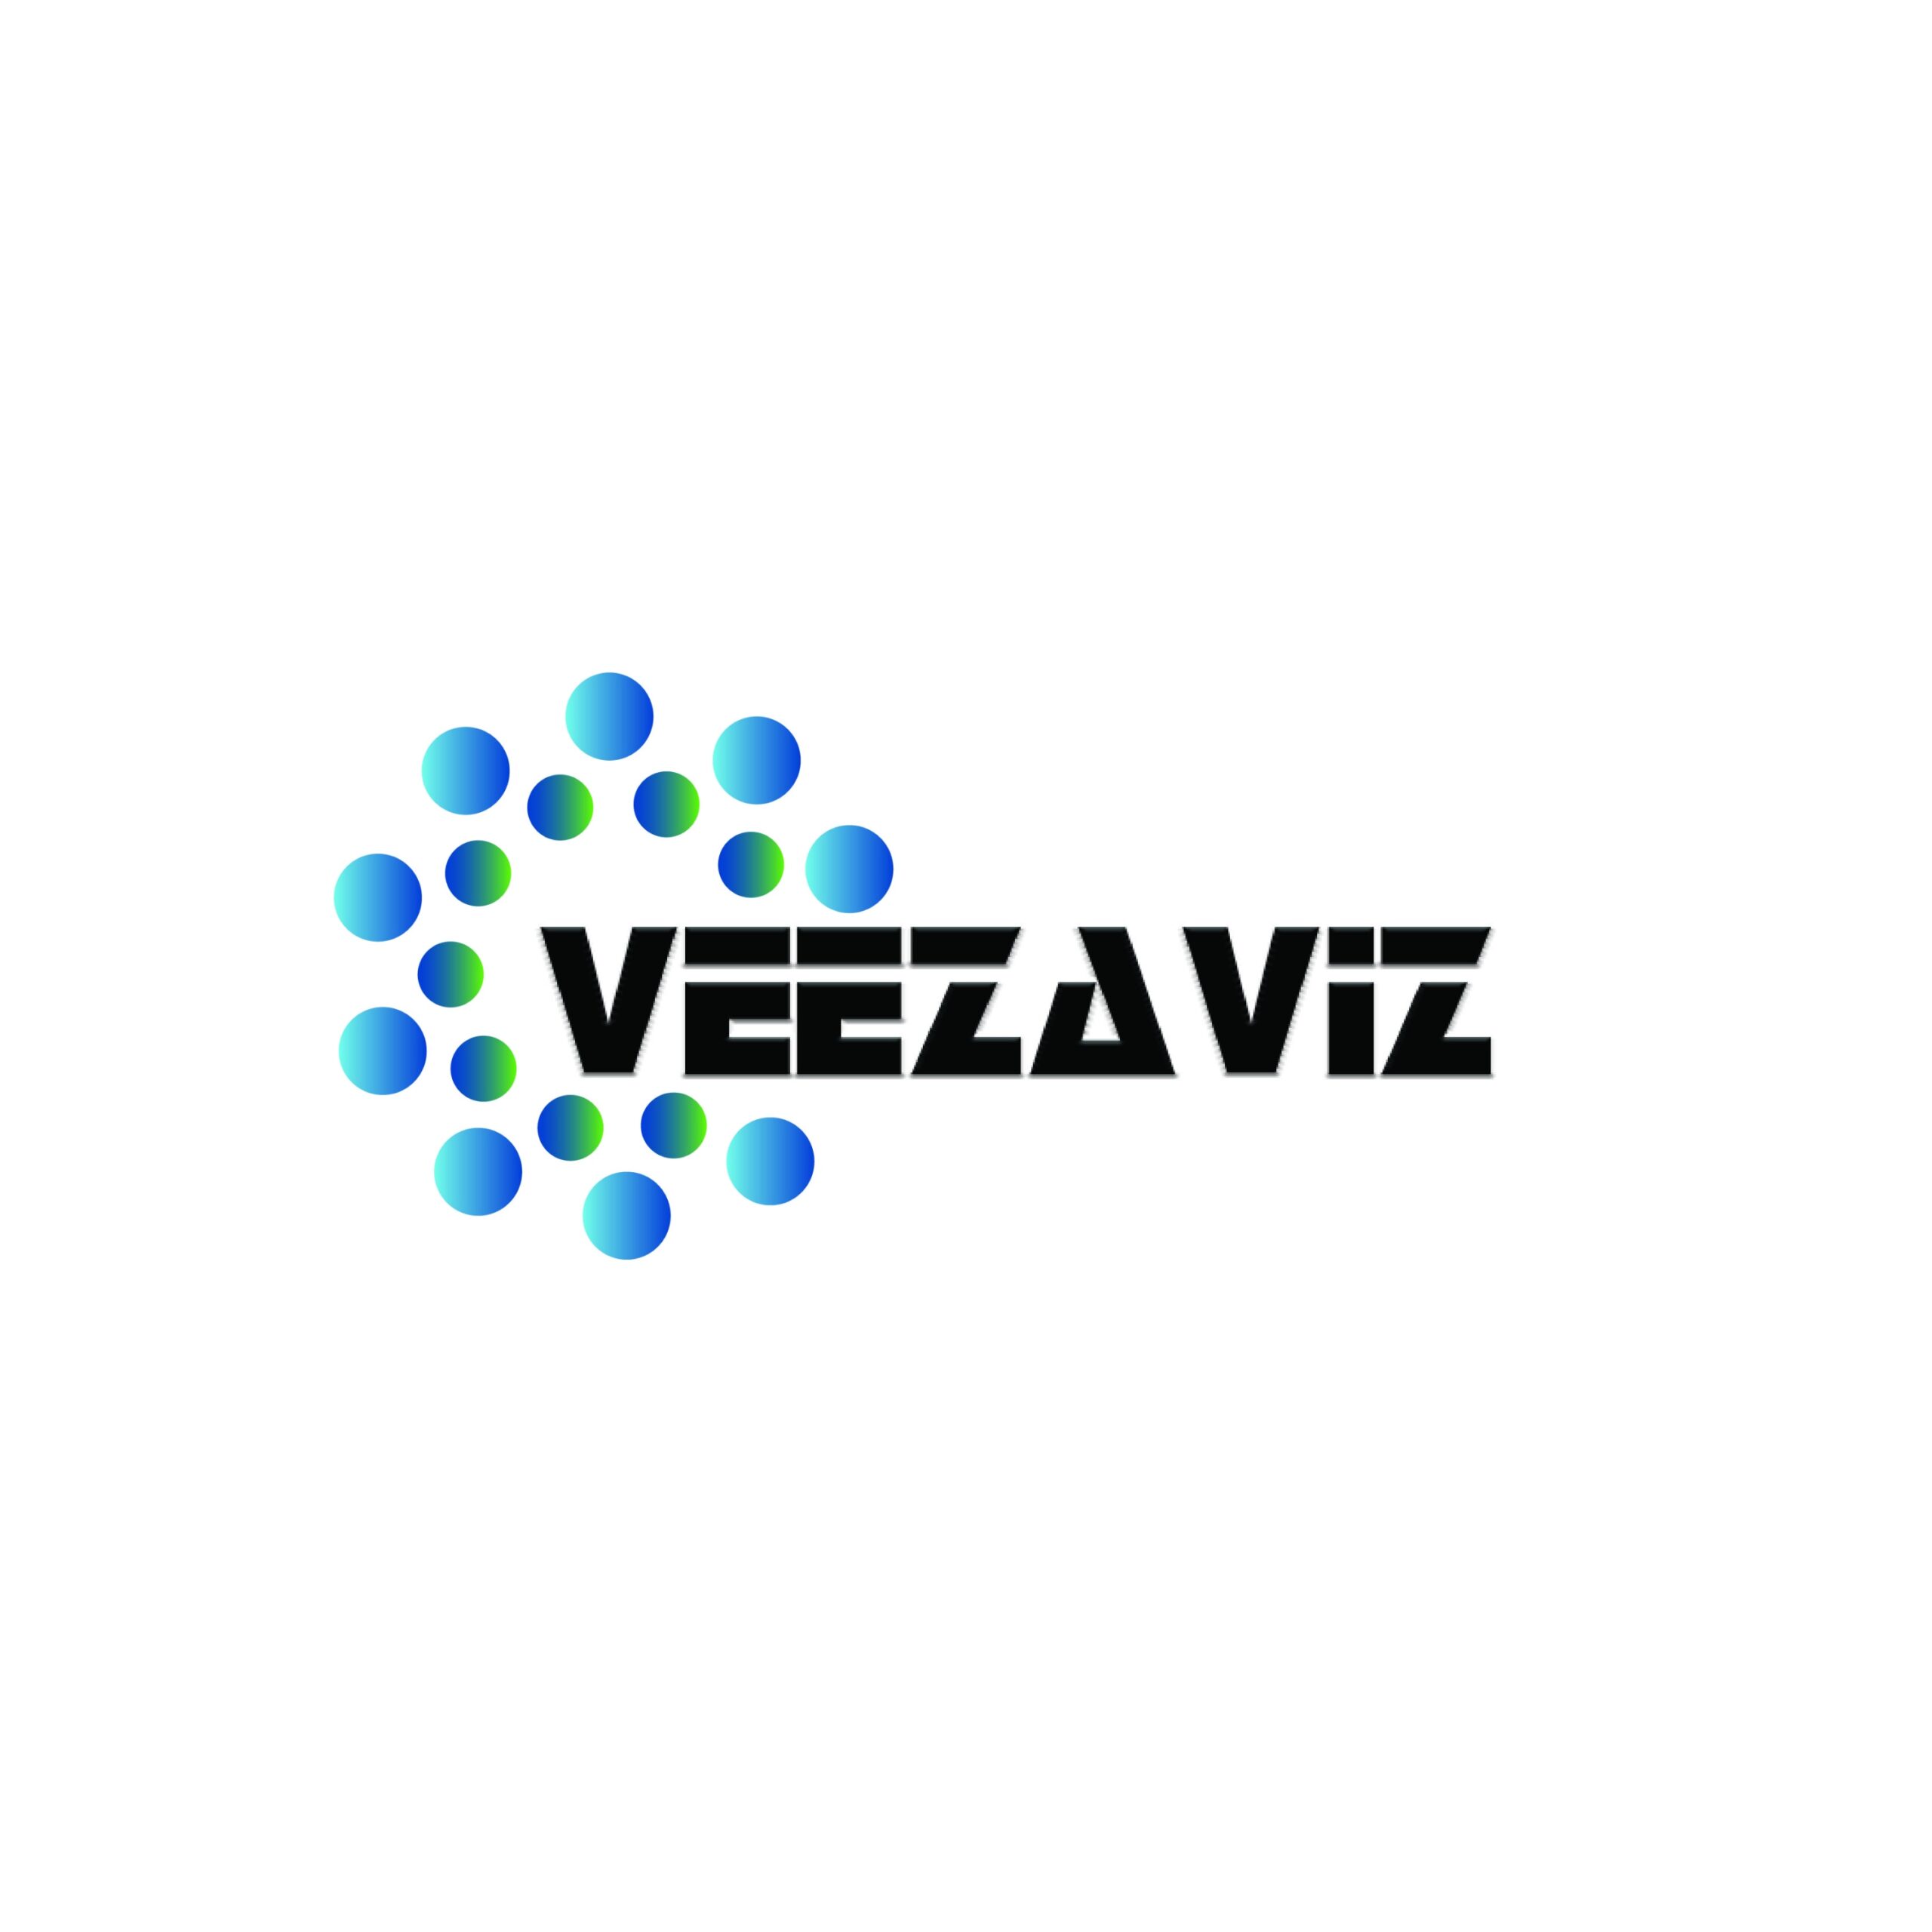 Veezaviz Logo